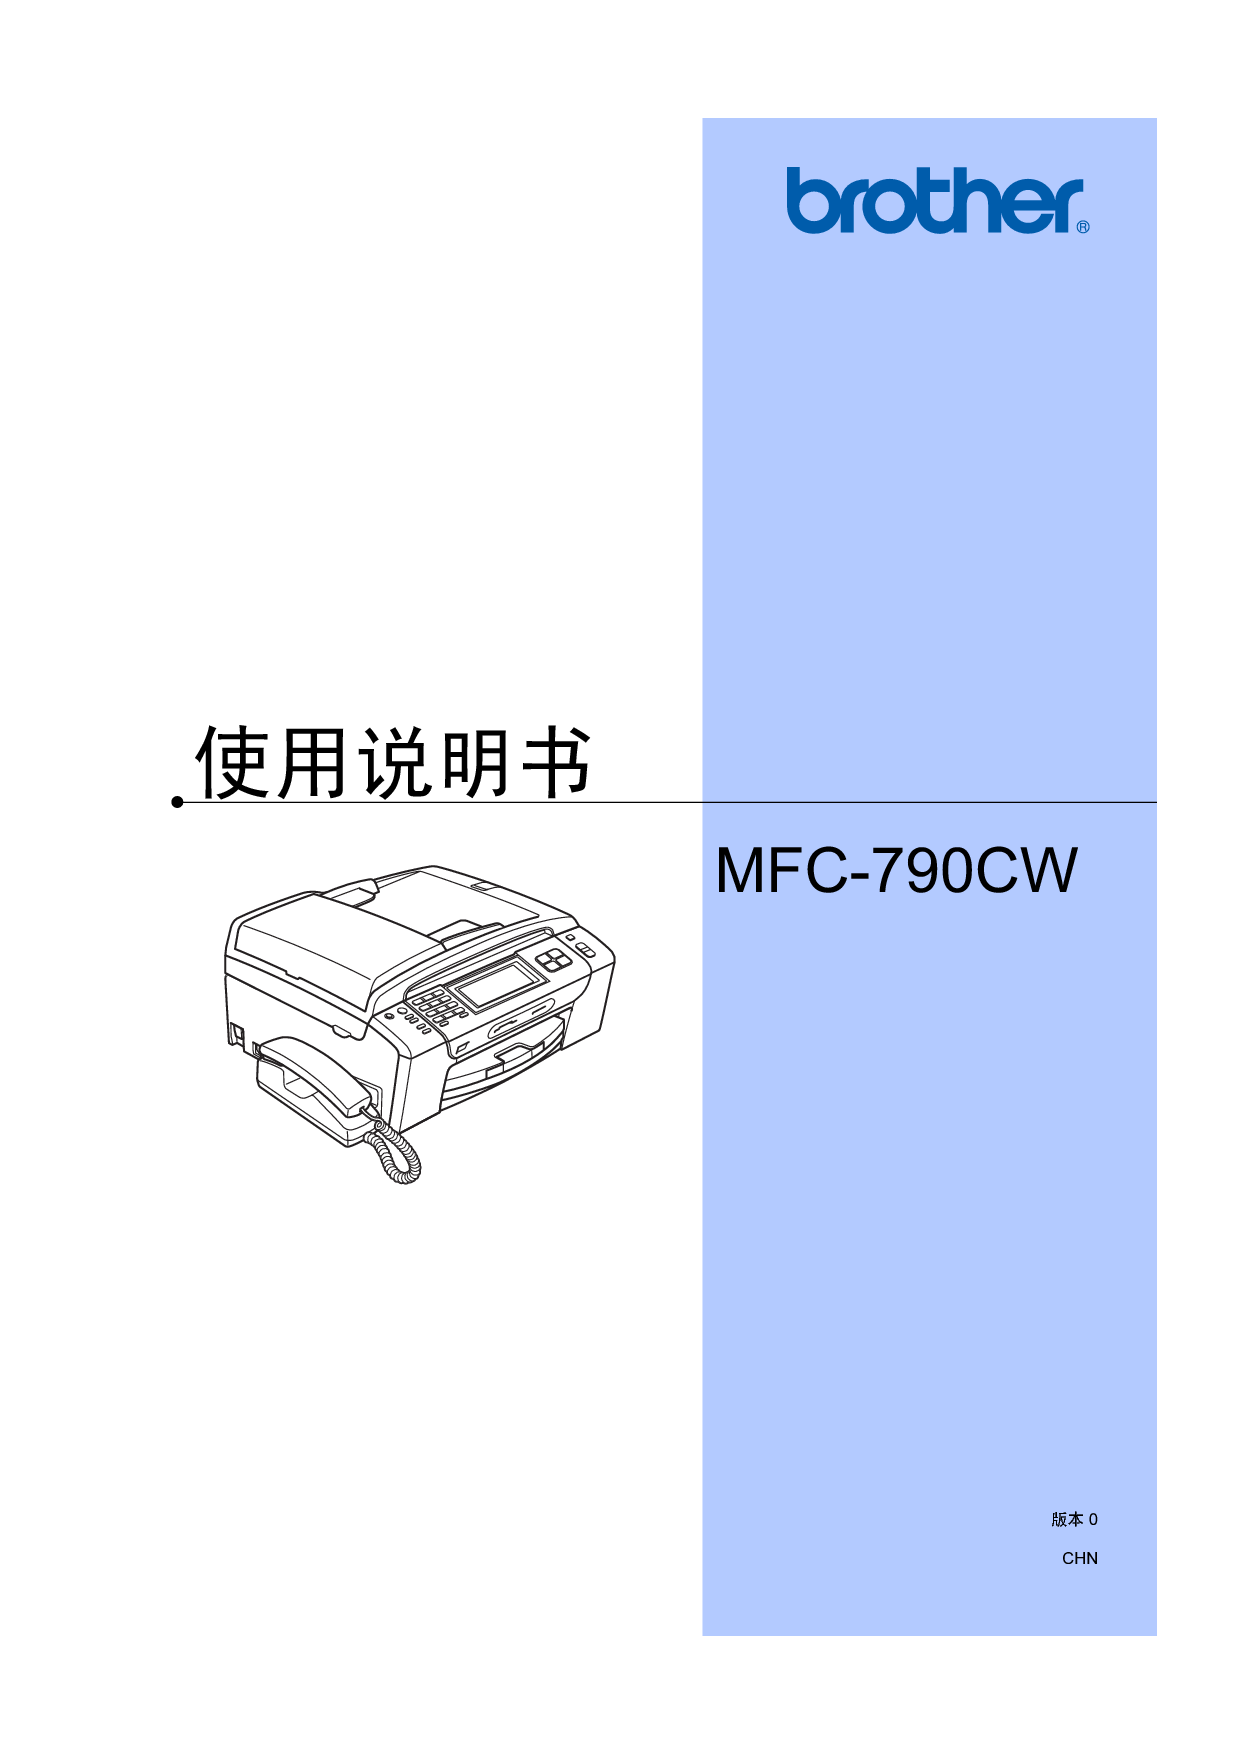 兄弟 Brother MFC-790CW 使用说明书 封面